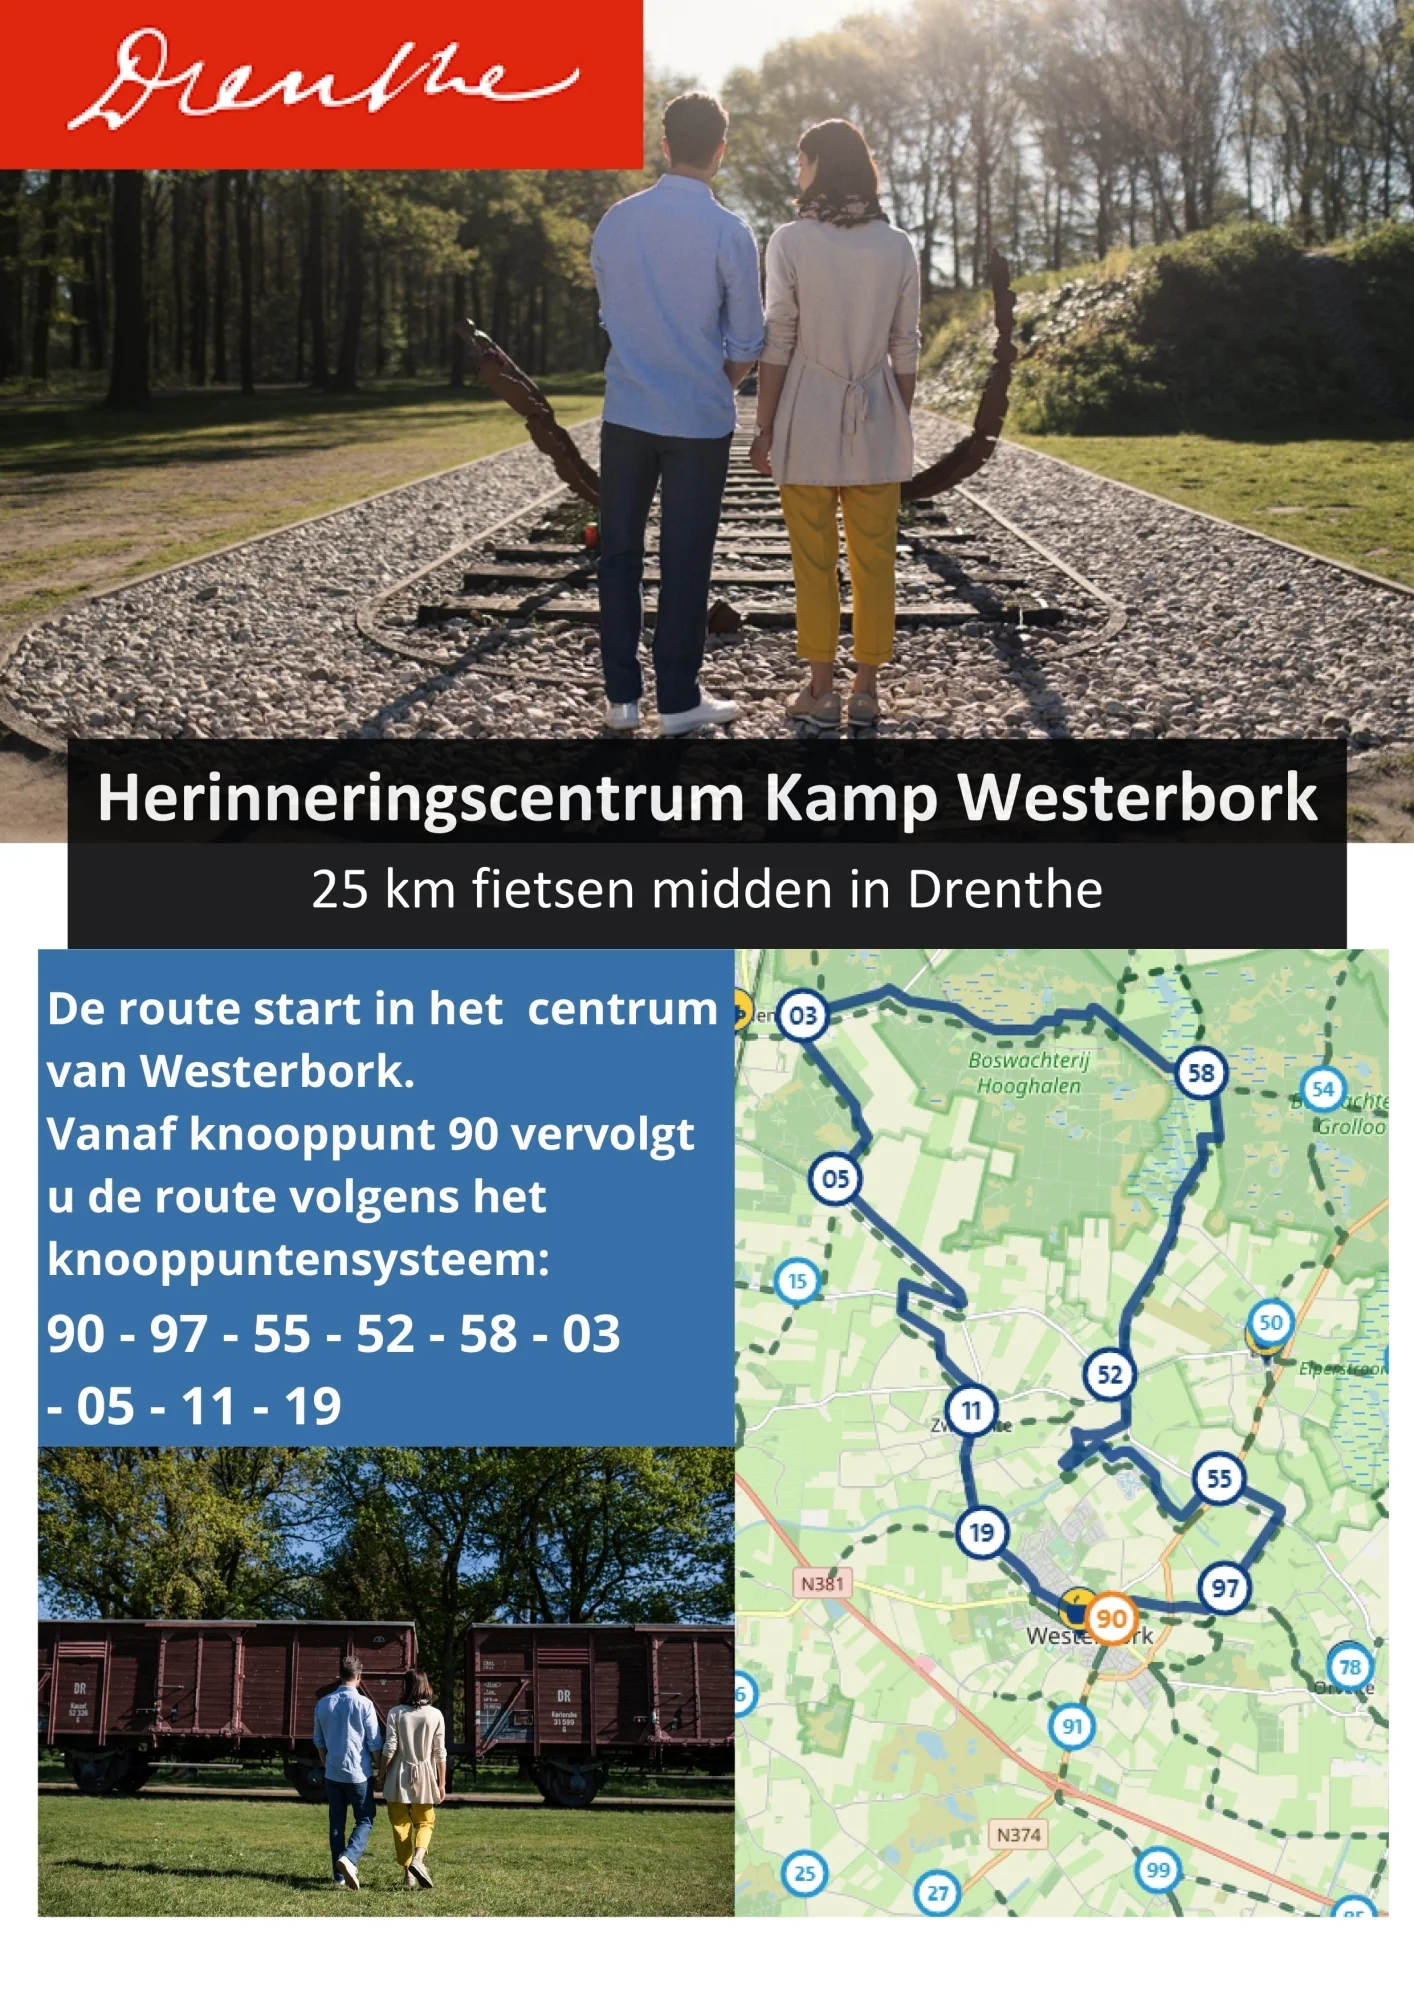 Kamp Westerbork | Combineer fietsen met de geschiedenis